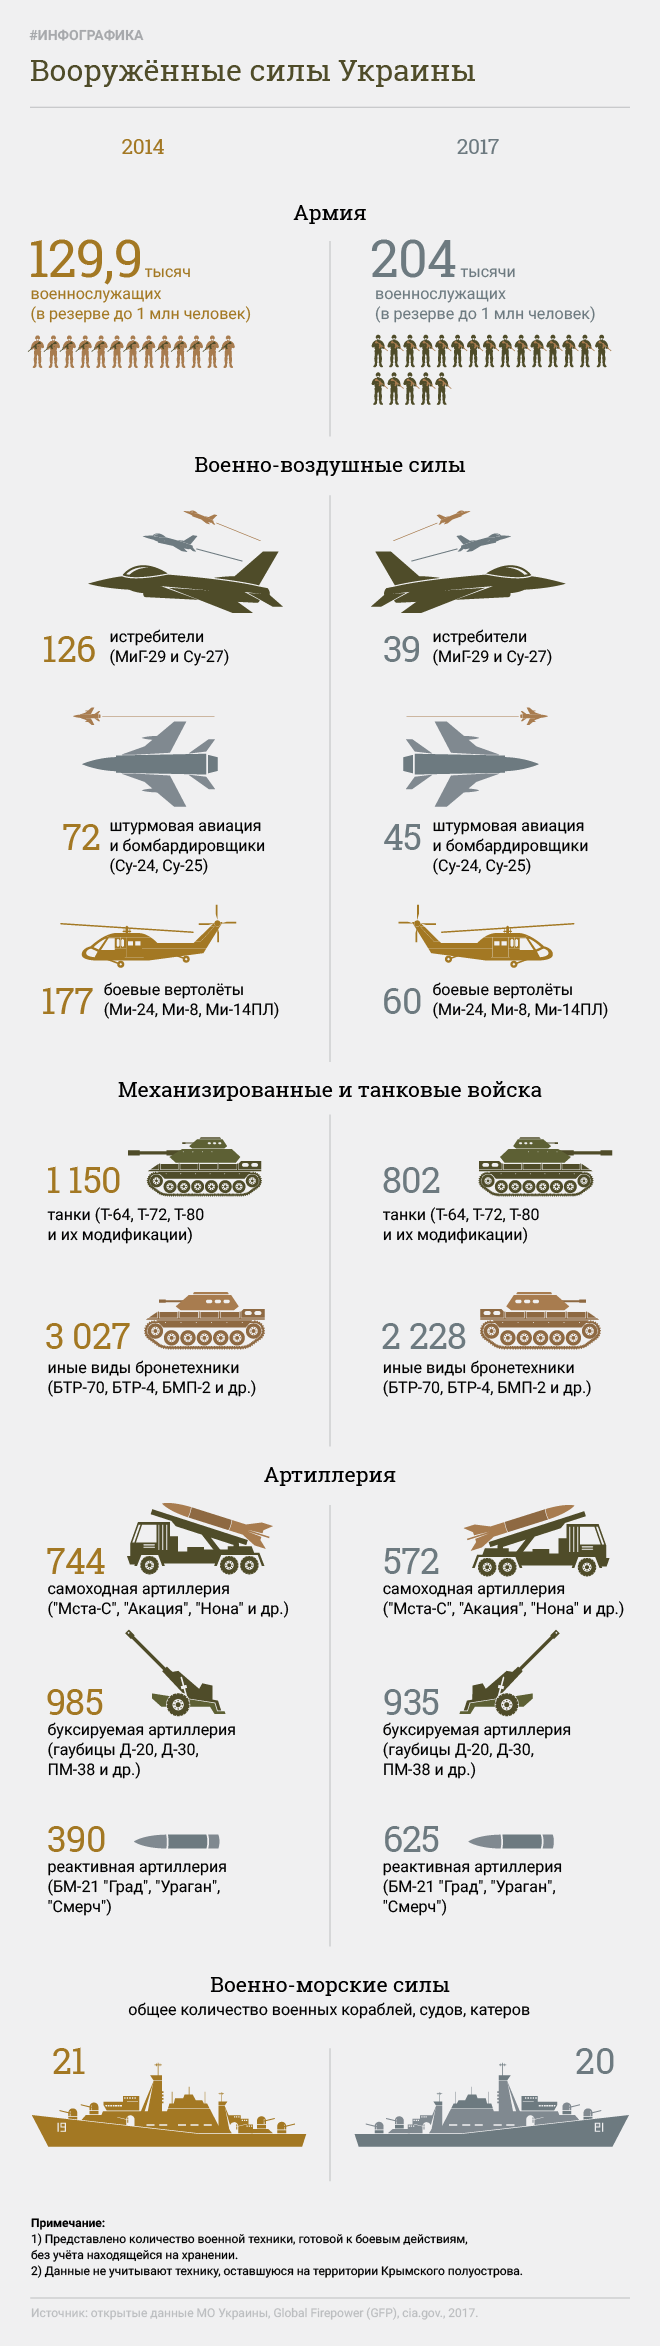 乌克兰武装部队。 信息图表